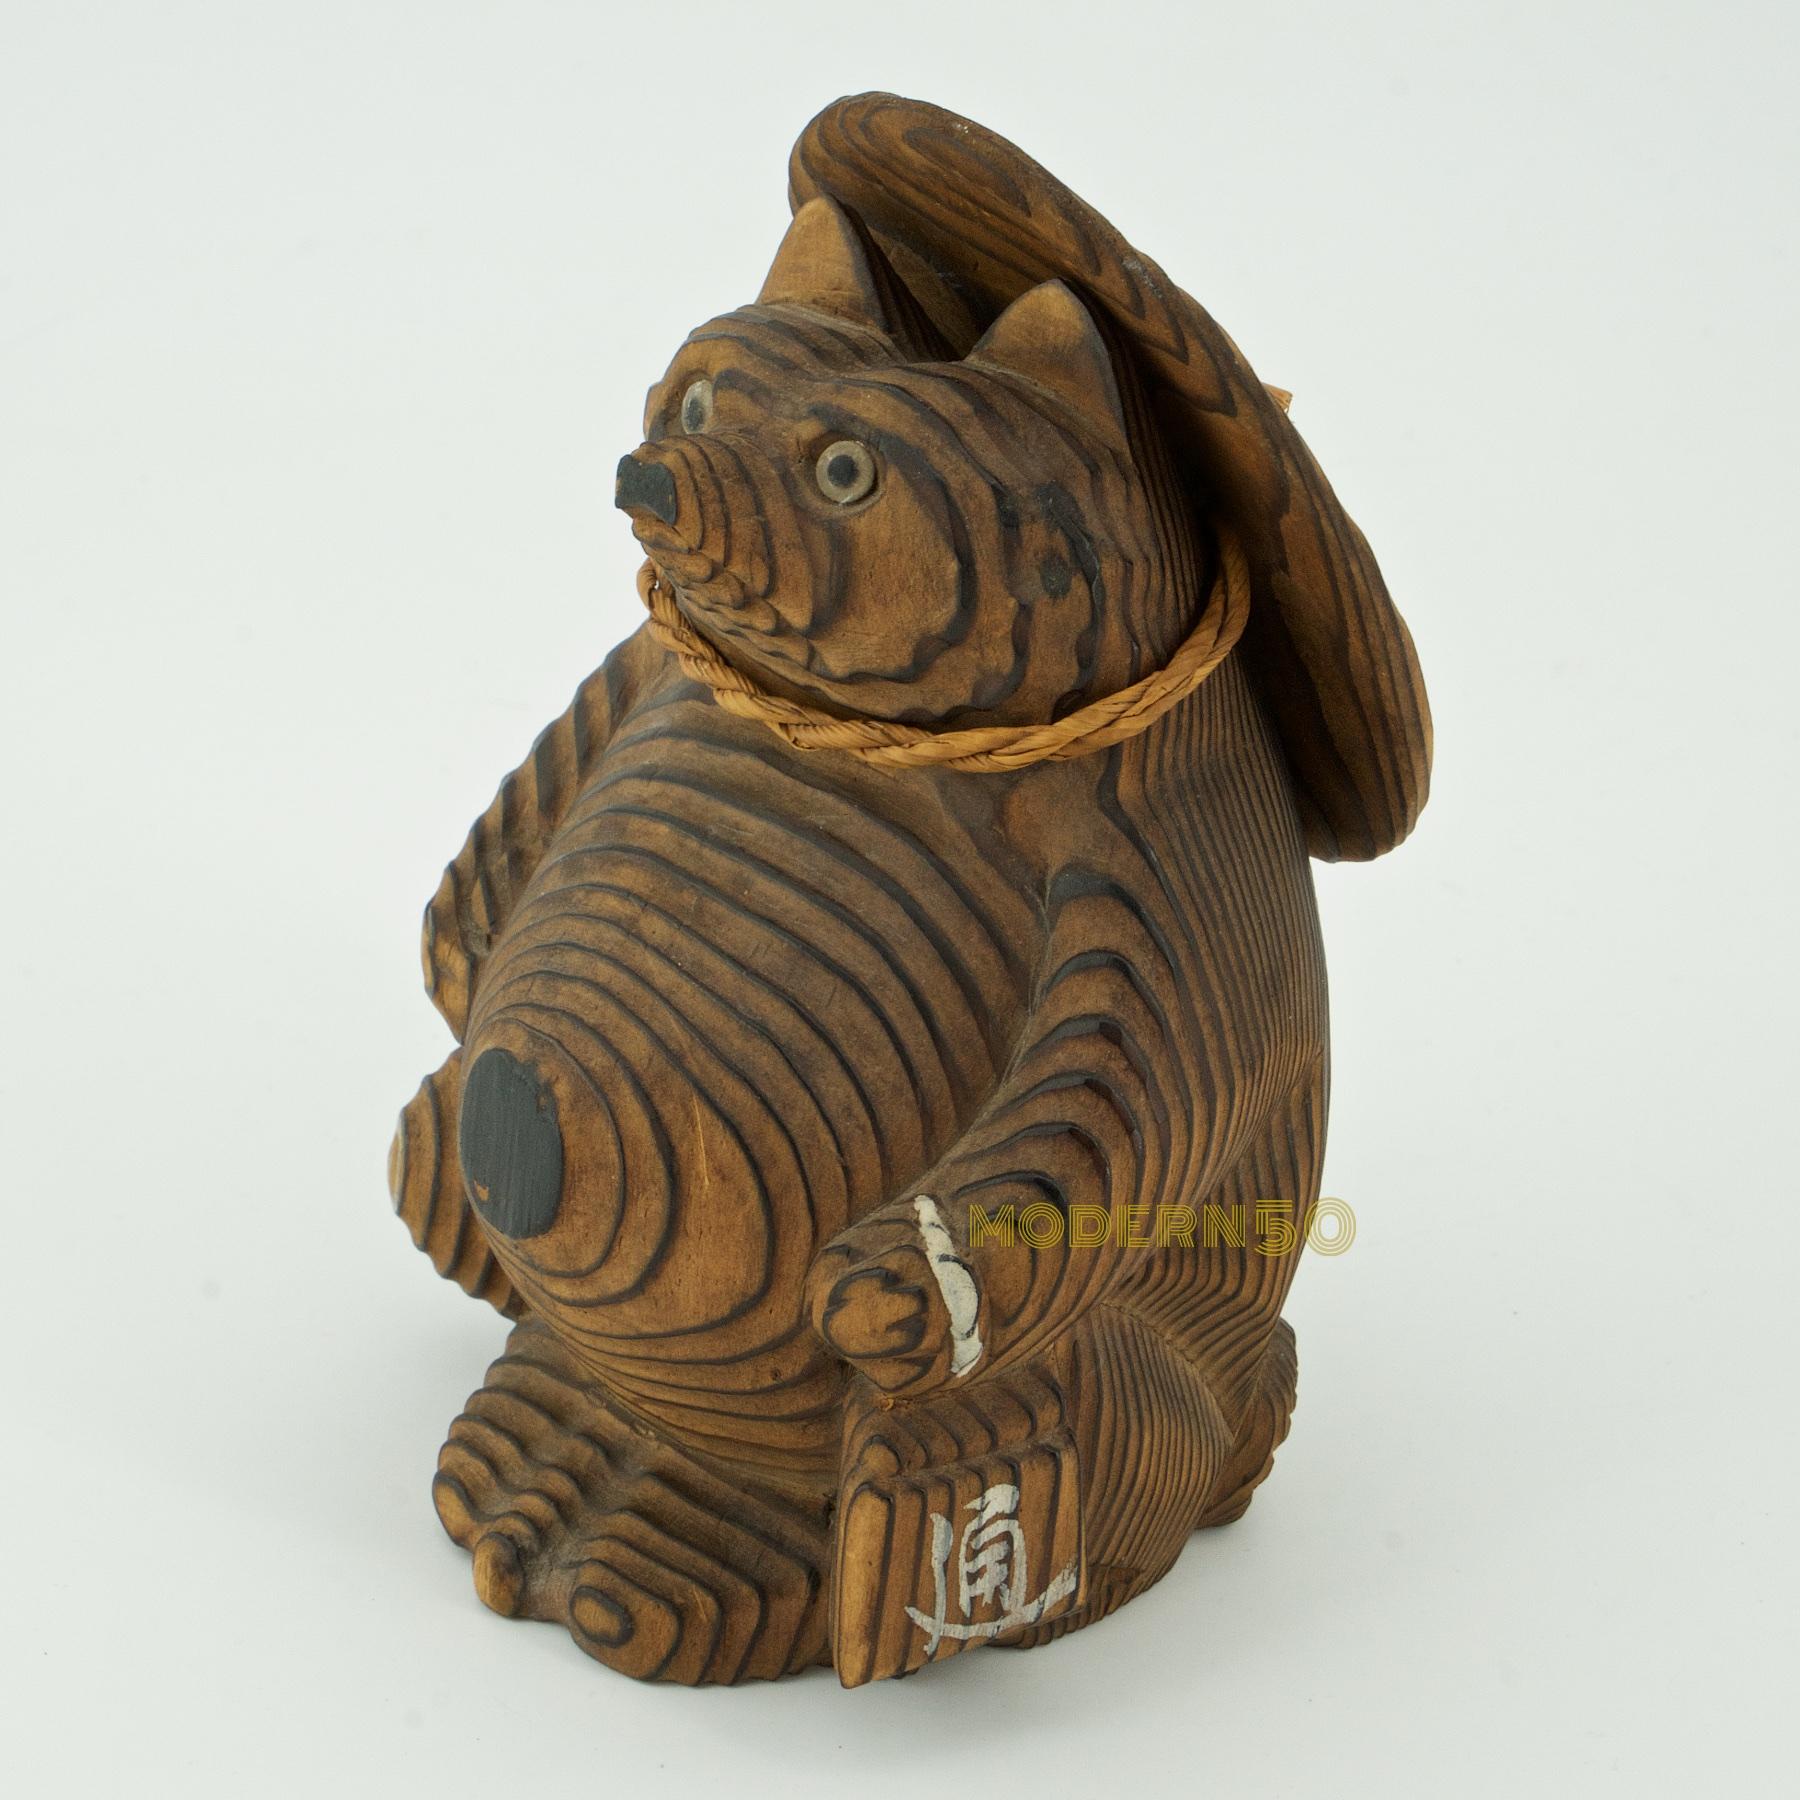 Shou-sugi-ban Japanischer Marderhund Skulptur Spielzeug Vintage Mid-Century Modern (Moderne der Mitte des Jahrhunderts)